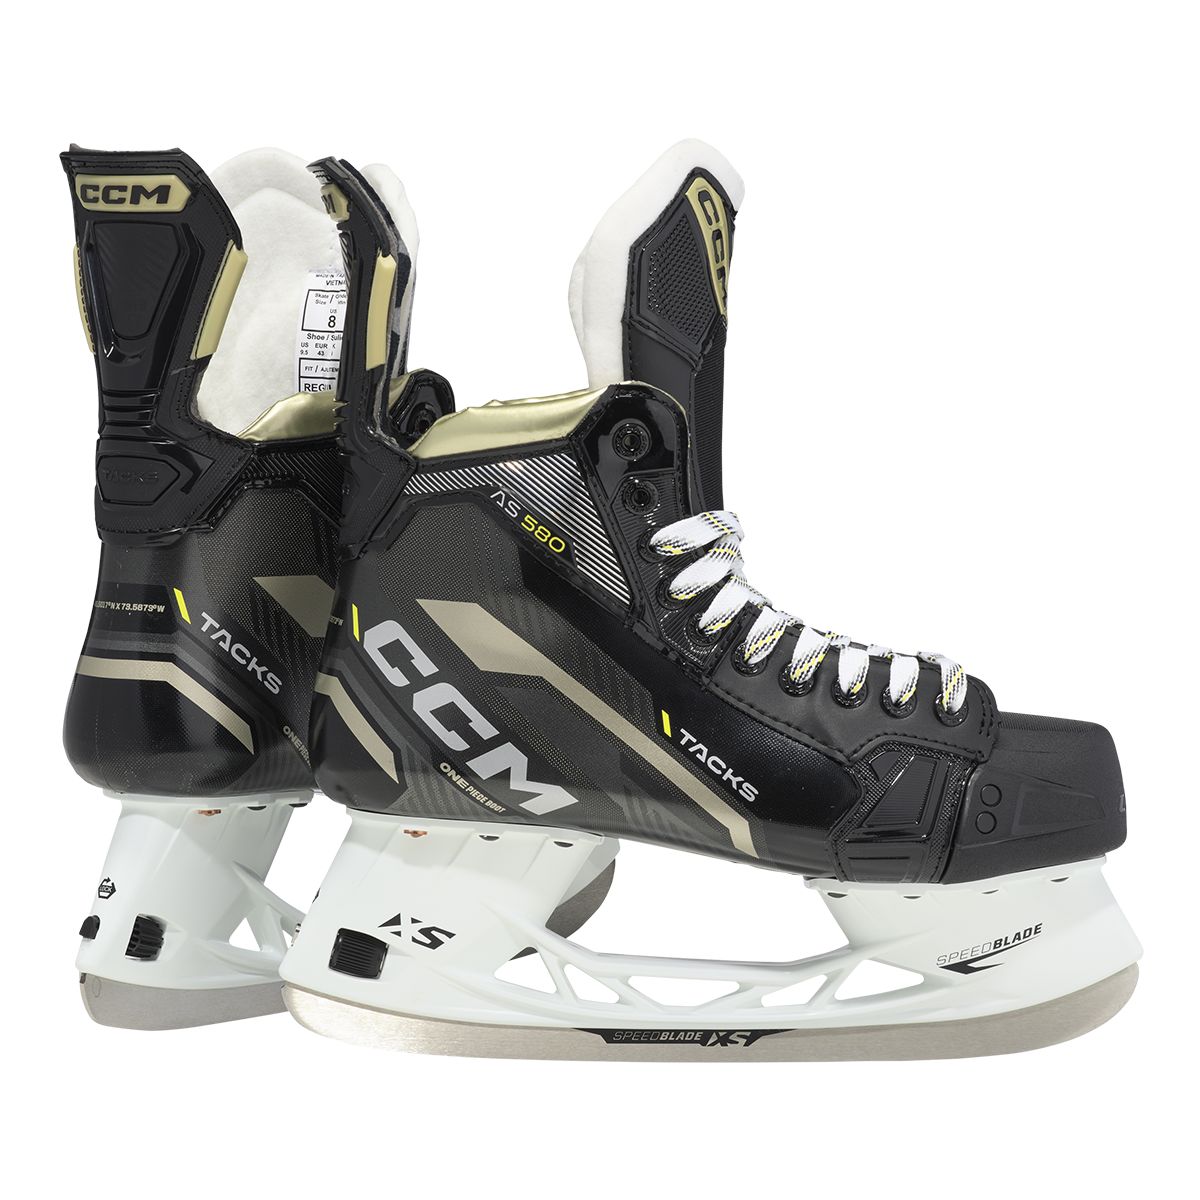 Image of CCM Tacks AS 580 Senior Hockey Skates